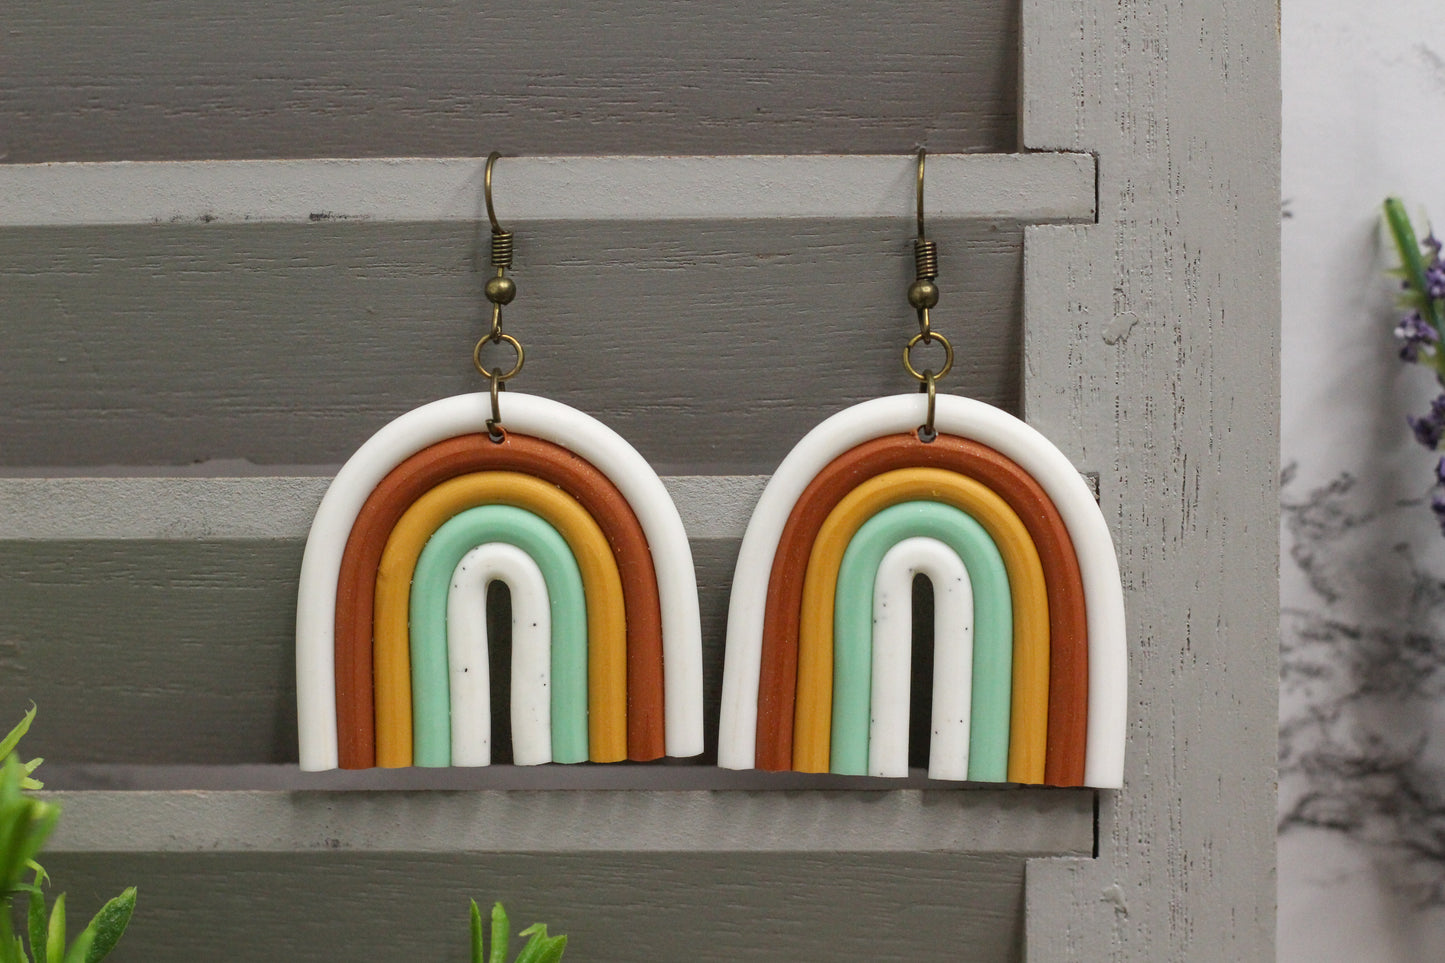 Polymer Clay Autumn Rainbow Earrings